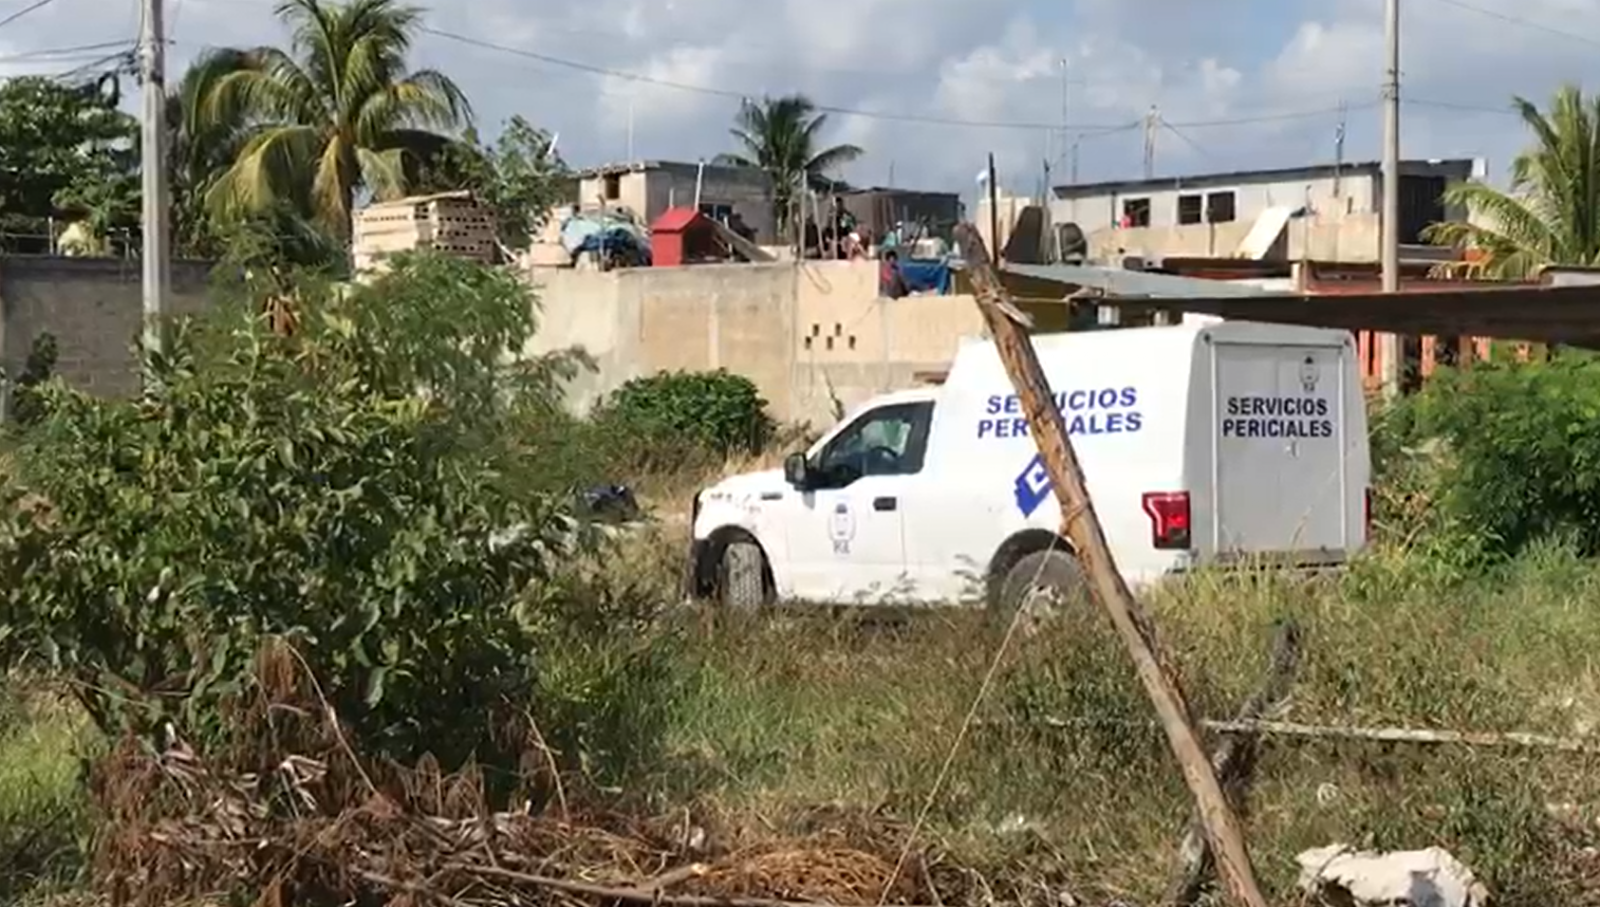 Hallan restos humanos dentro de una bolsa en la Región 236 de Cancún: VIDEO